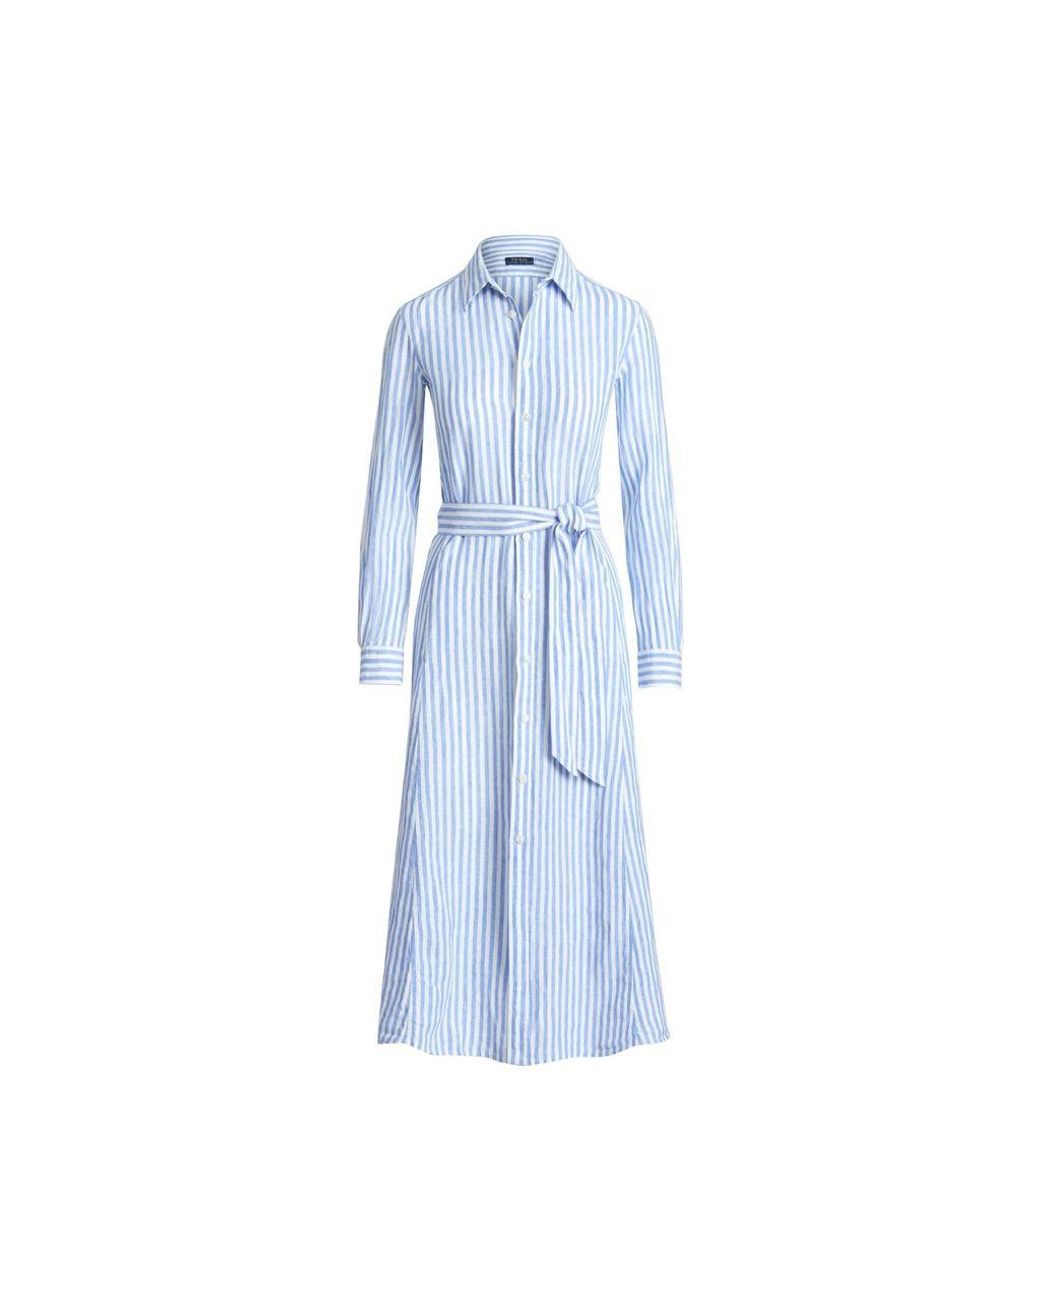 Polo Ralph Lauren Striped Linen Shirtdress in Blue | Lyst Canada